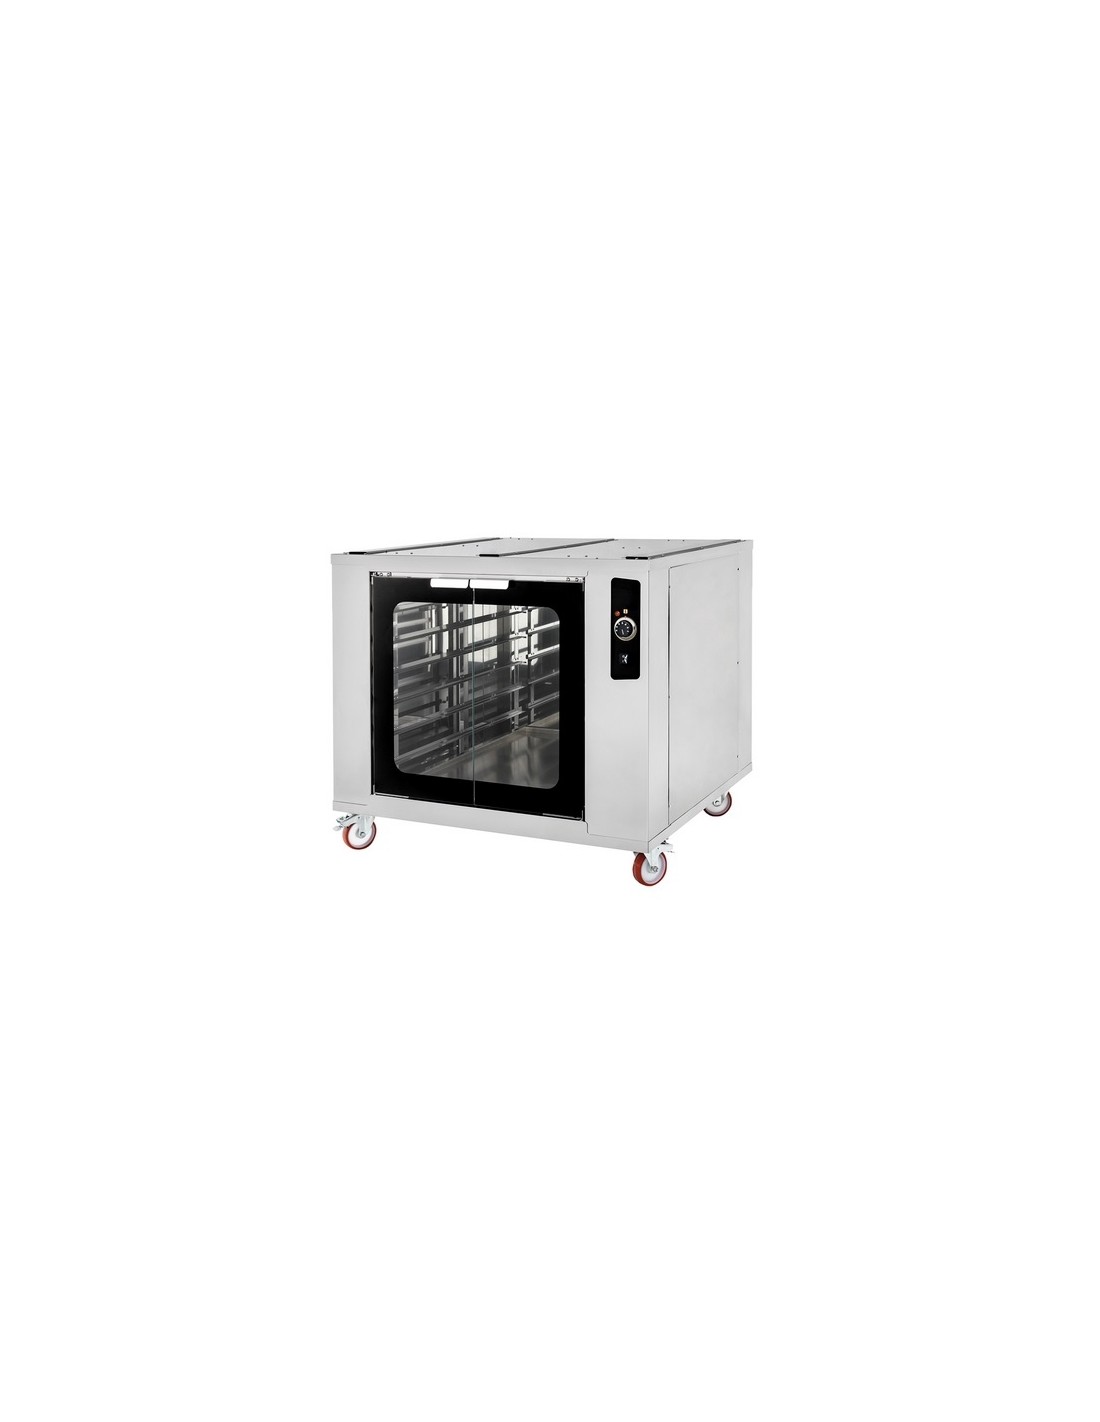 Celda de fermentación - Para hornos TRAYS - Capacidad para 12 bandejas de 40 x 60 cm - Compatible con hornos Trays